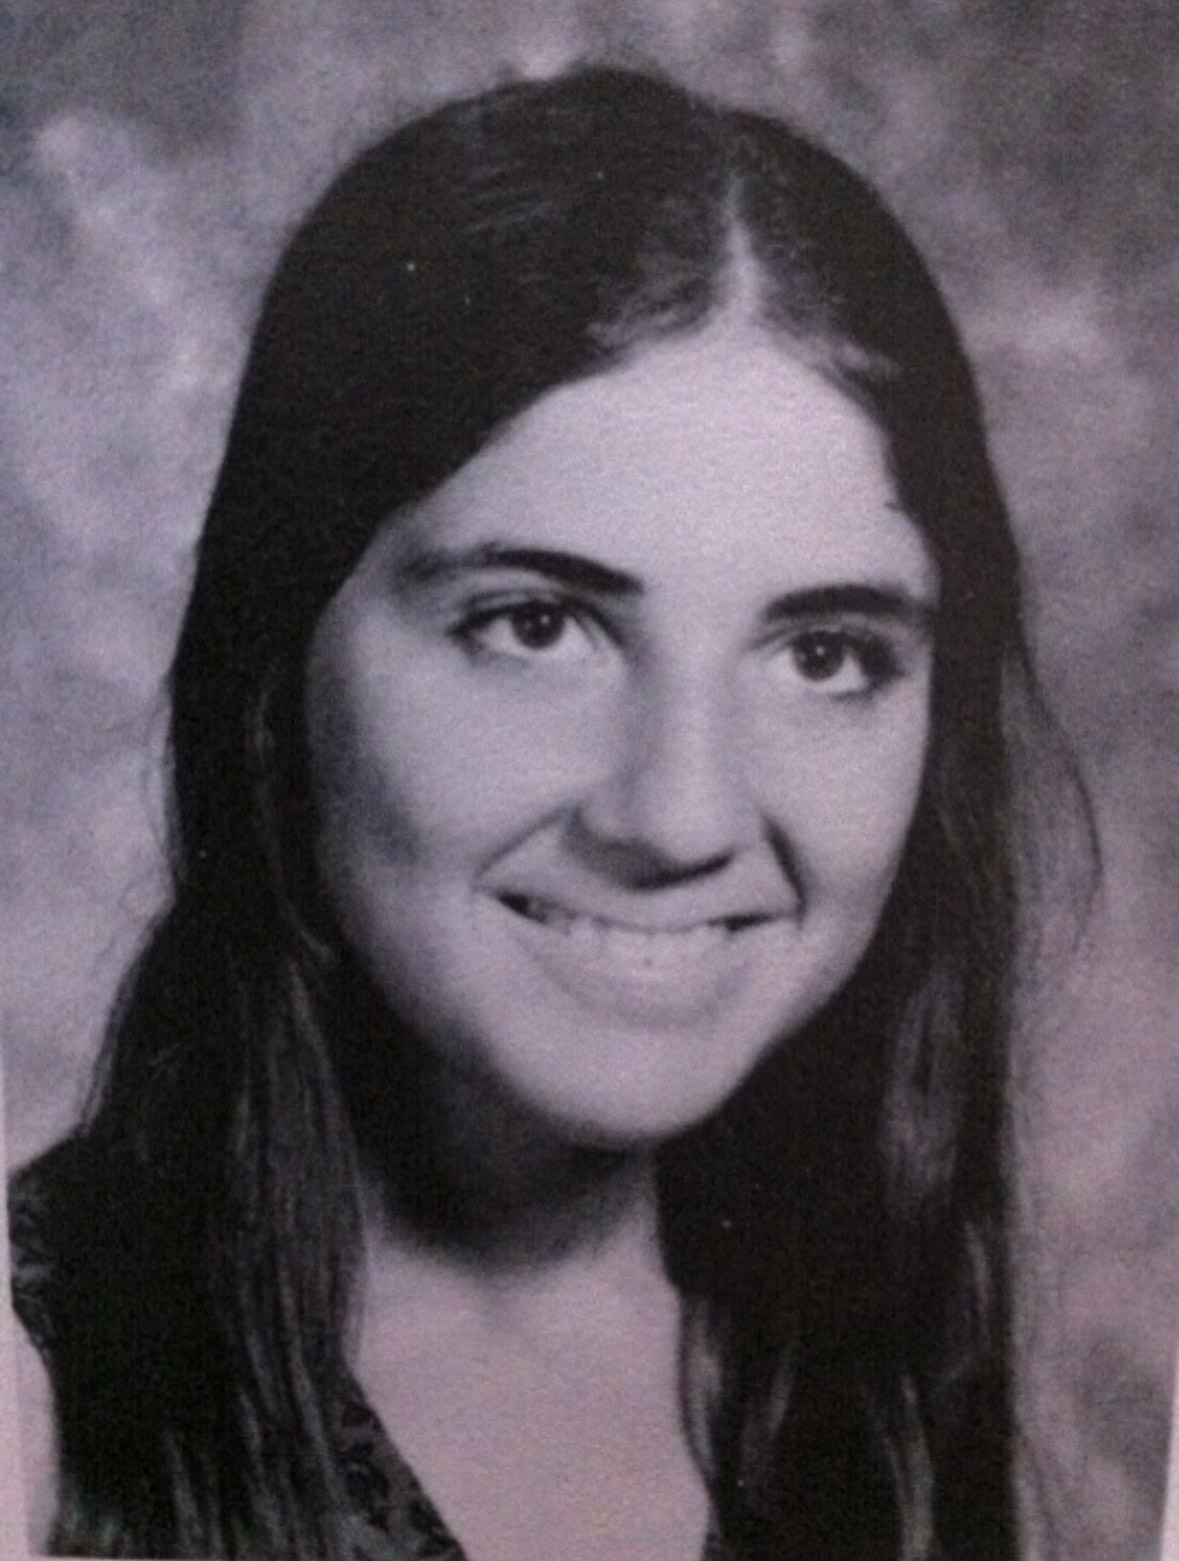 (PHOTO: Lisa Stewart's senior yearbook photo from 1974.)